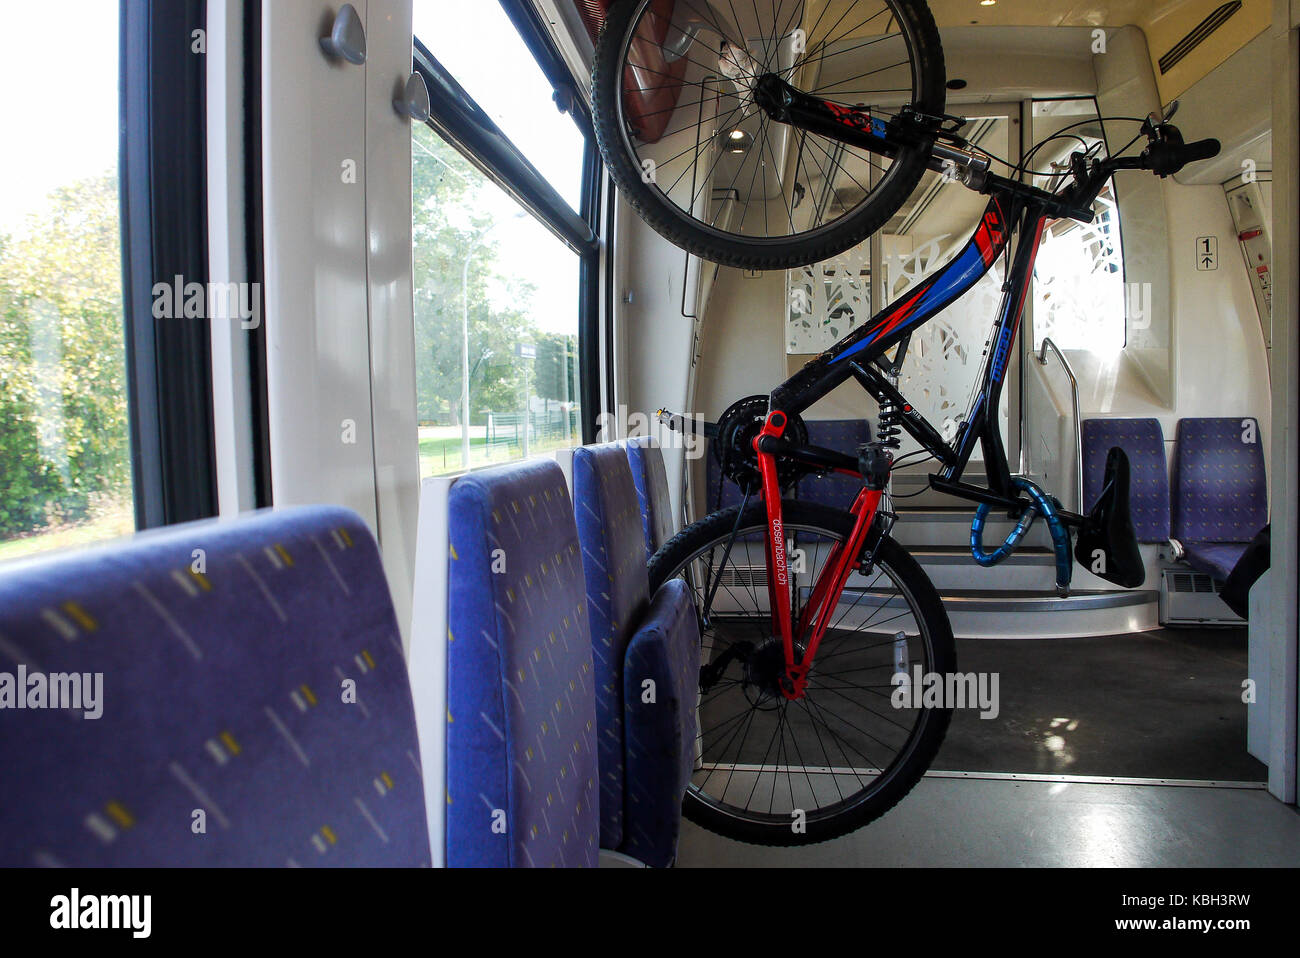 Un vélo est suspendu dans un train régional (ter), france Photo Stock -  Alamy